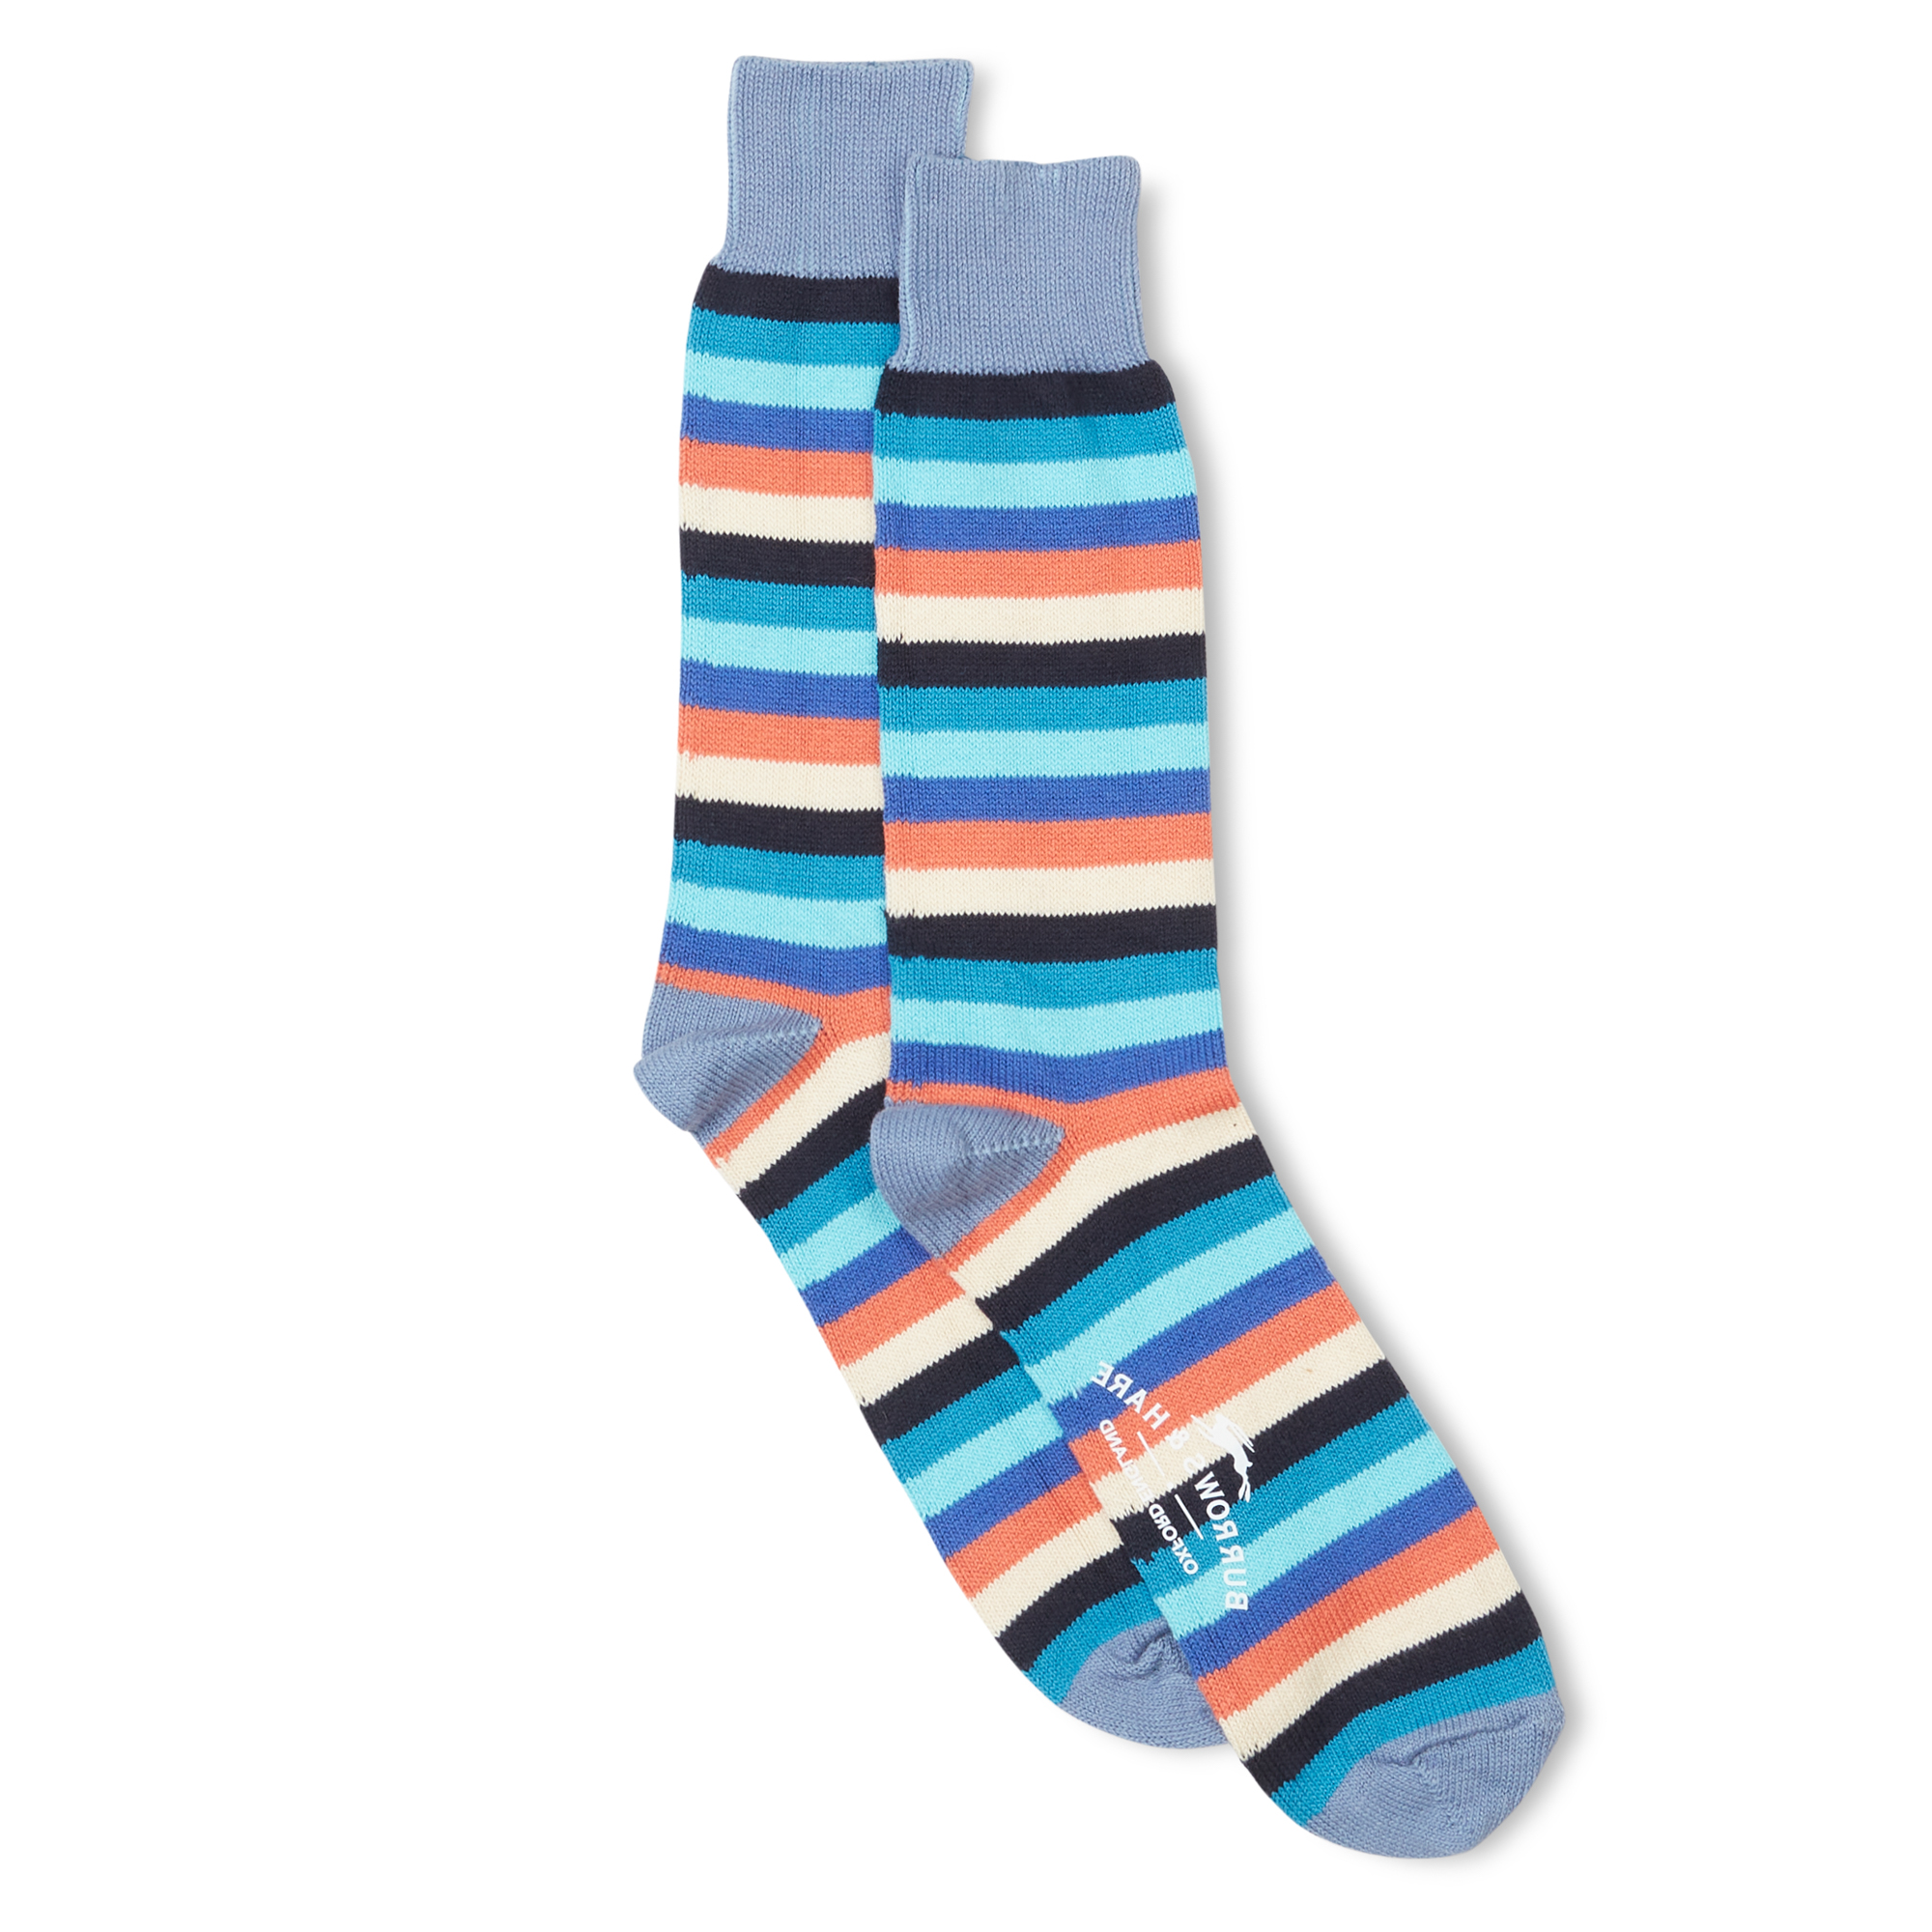 Burrows & Hare  Multi Stripe Sock - Stone Wash Blue 